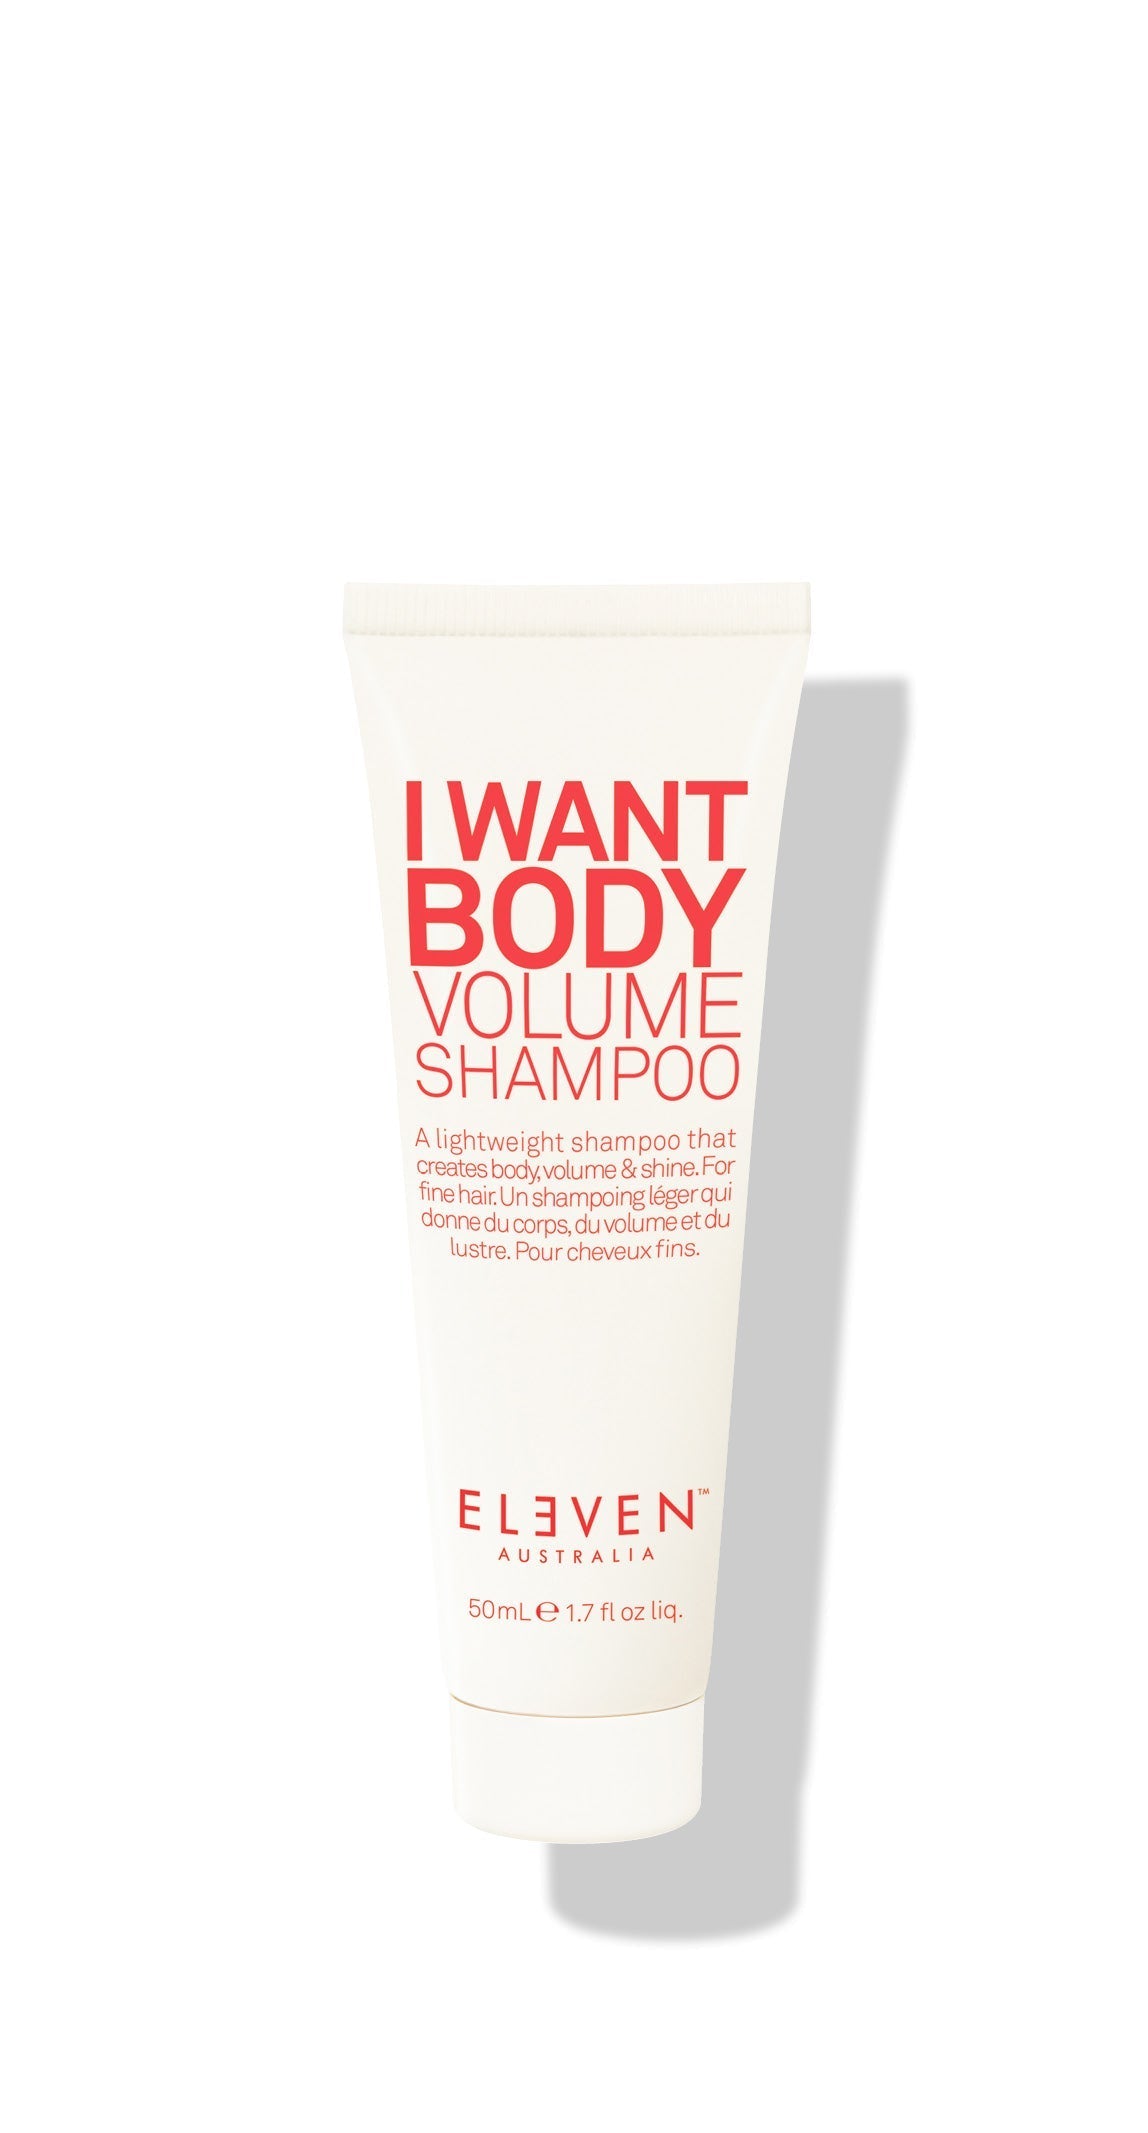 I Want Body Volume Shampoo - 50ml - ELEVEN Australia